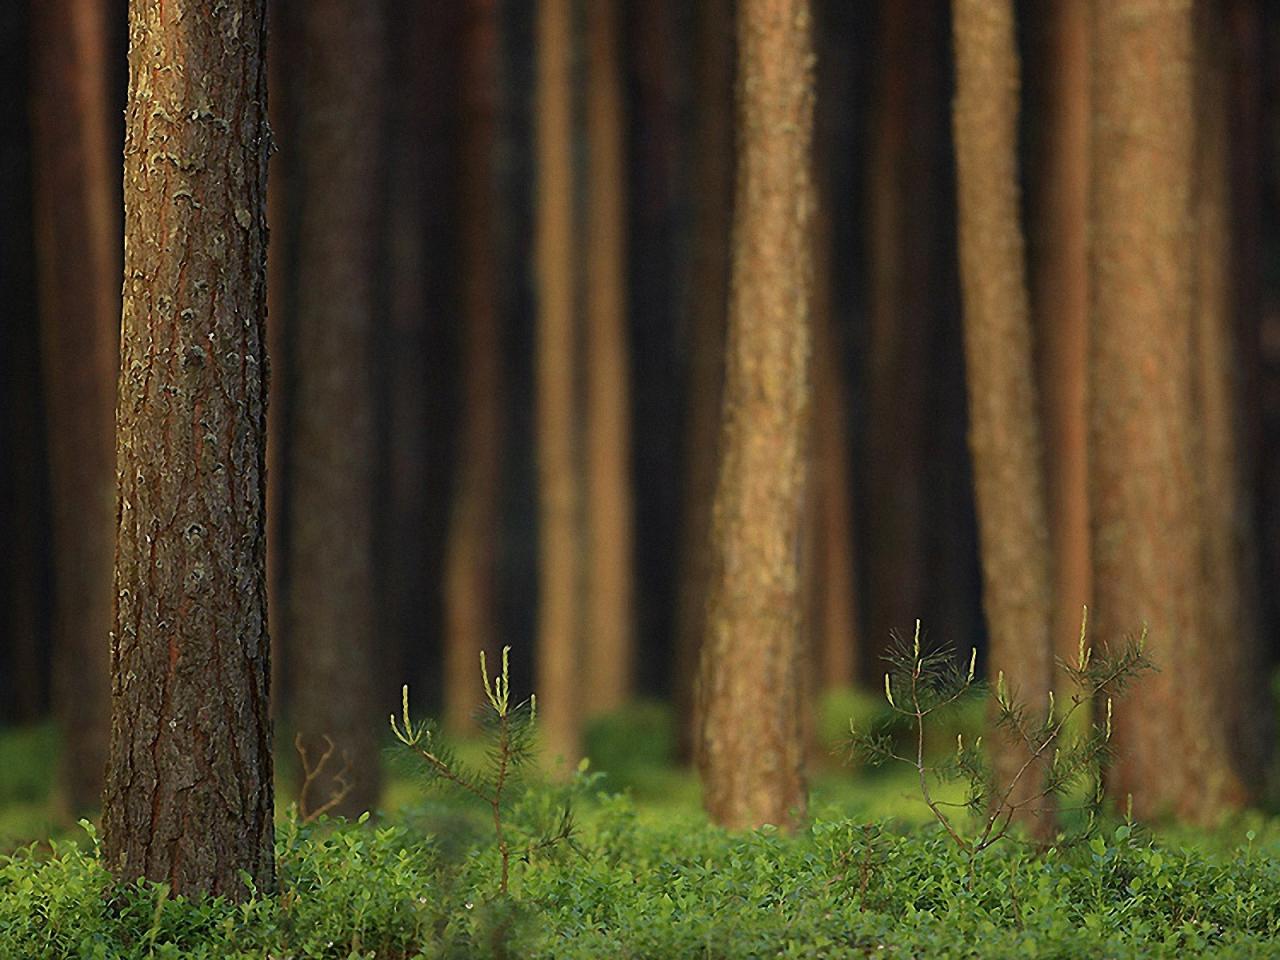 обои Стволы деревьев в лесy фото